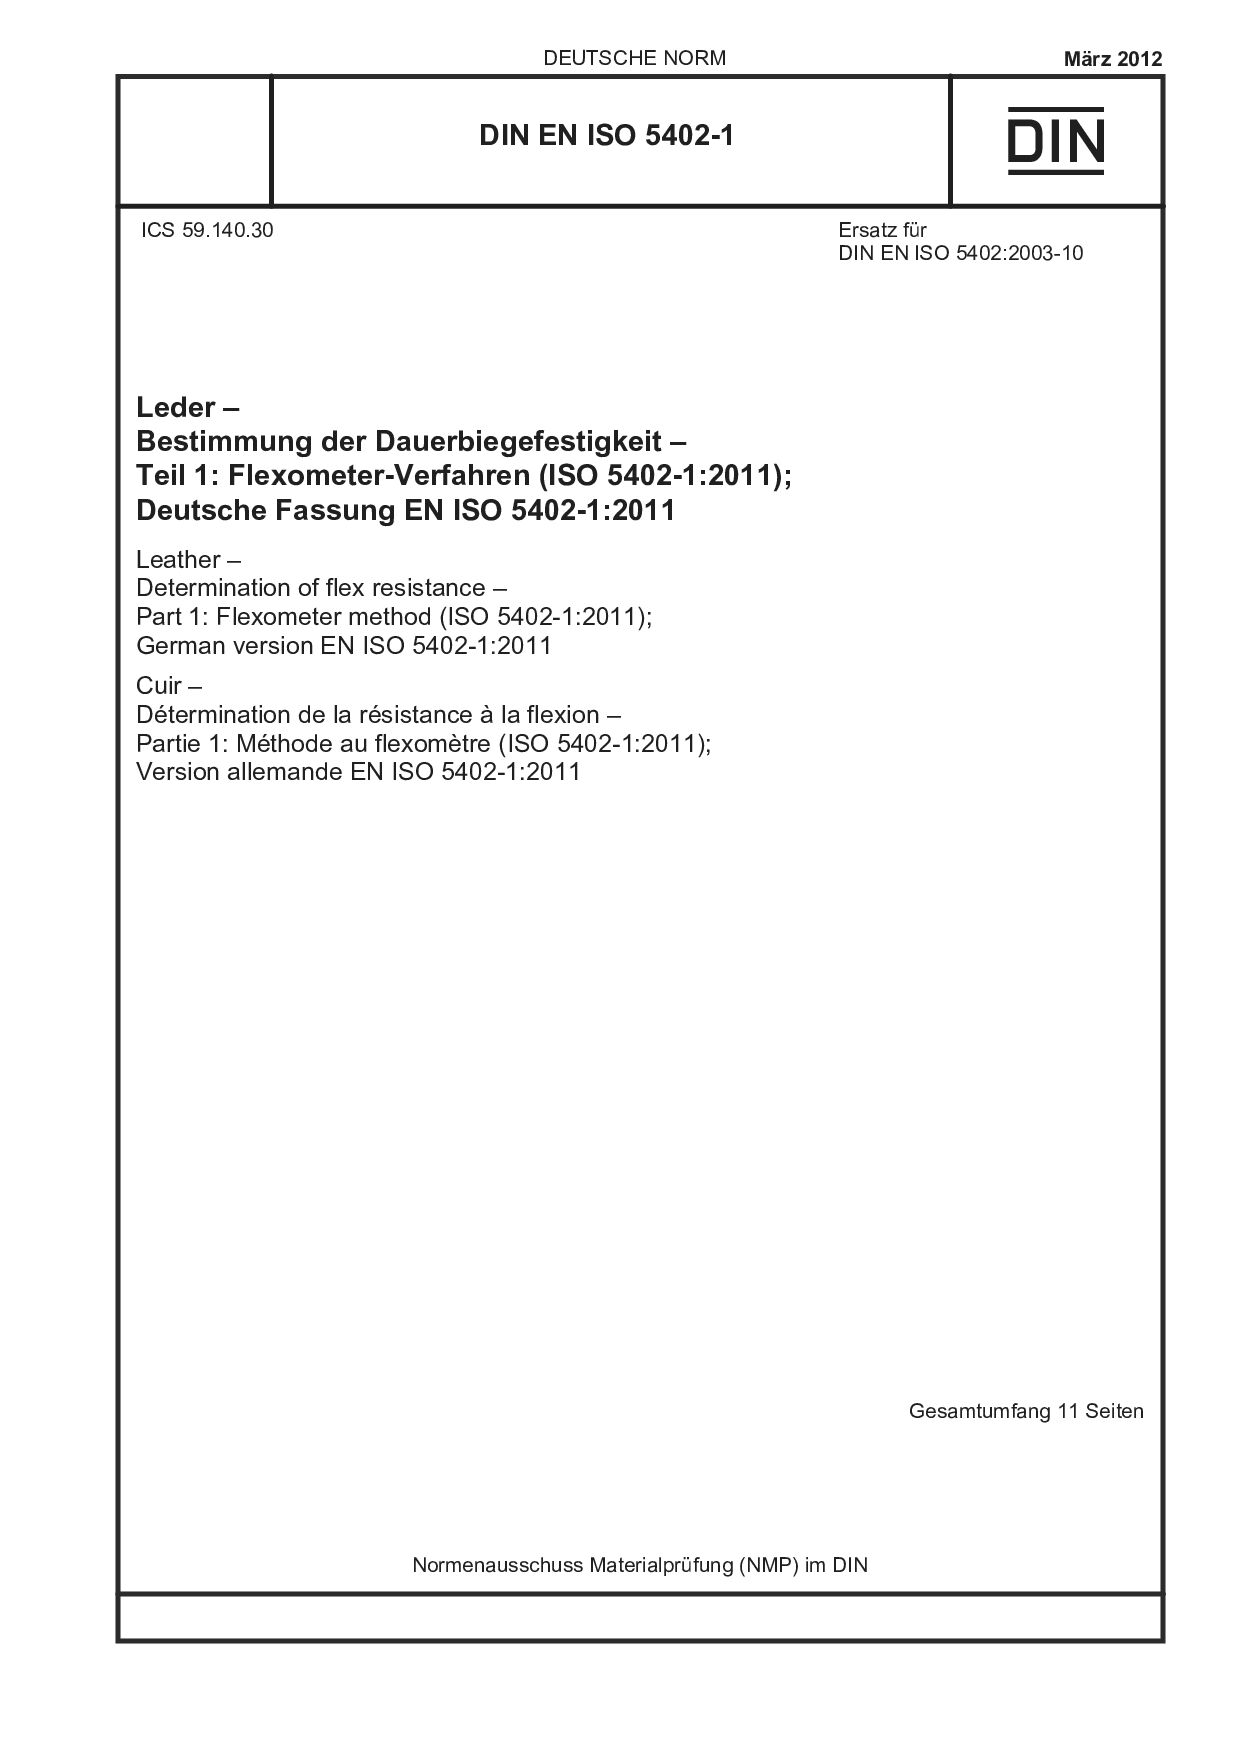 DIN EN ISO 5402-1:2012